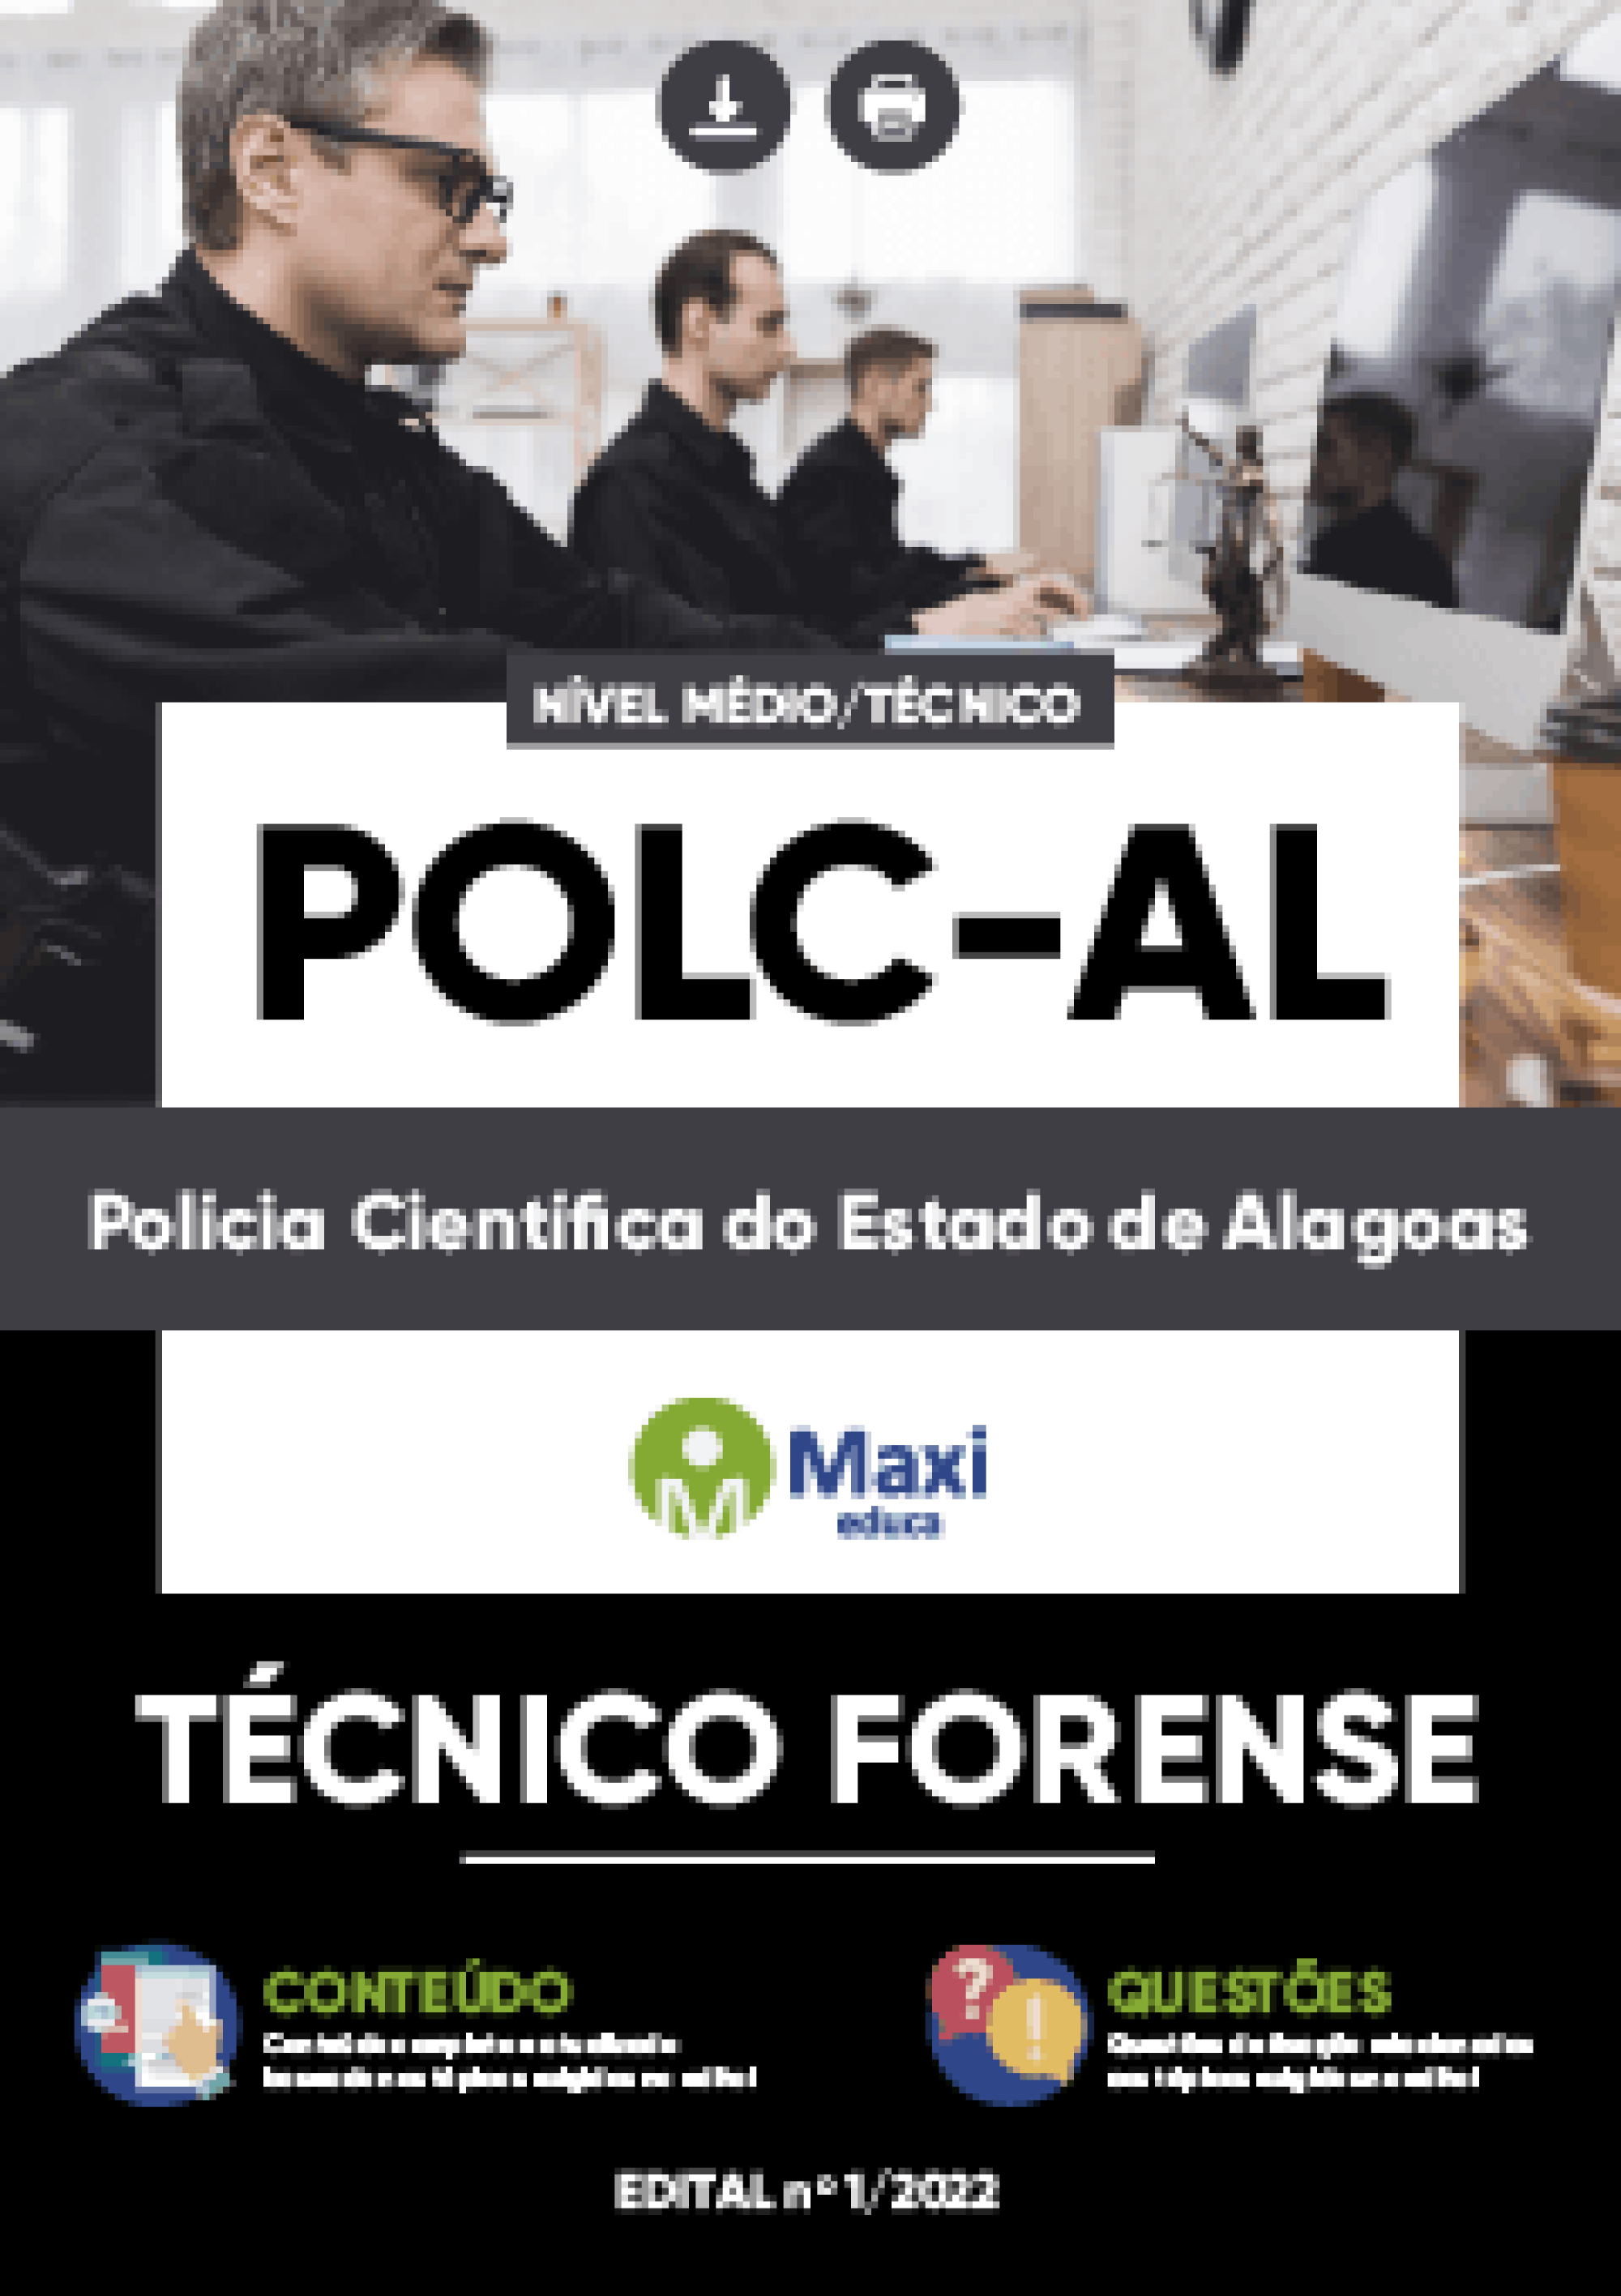 Apostila Digital em PDF do Polícia Científica do Estado de Alagoas - POL-AL